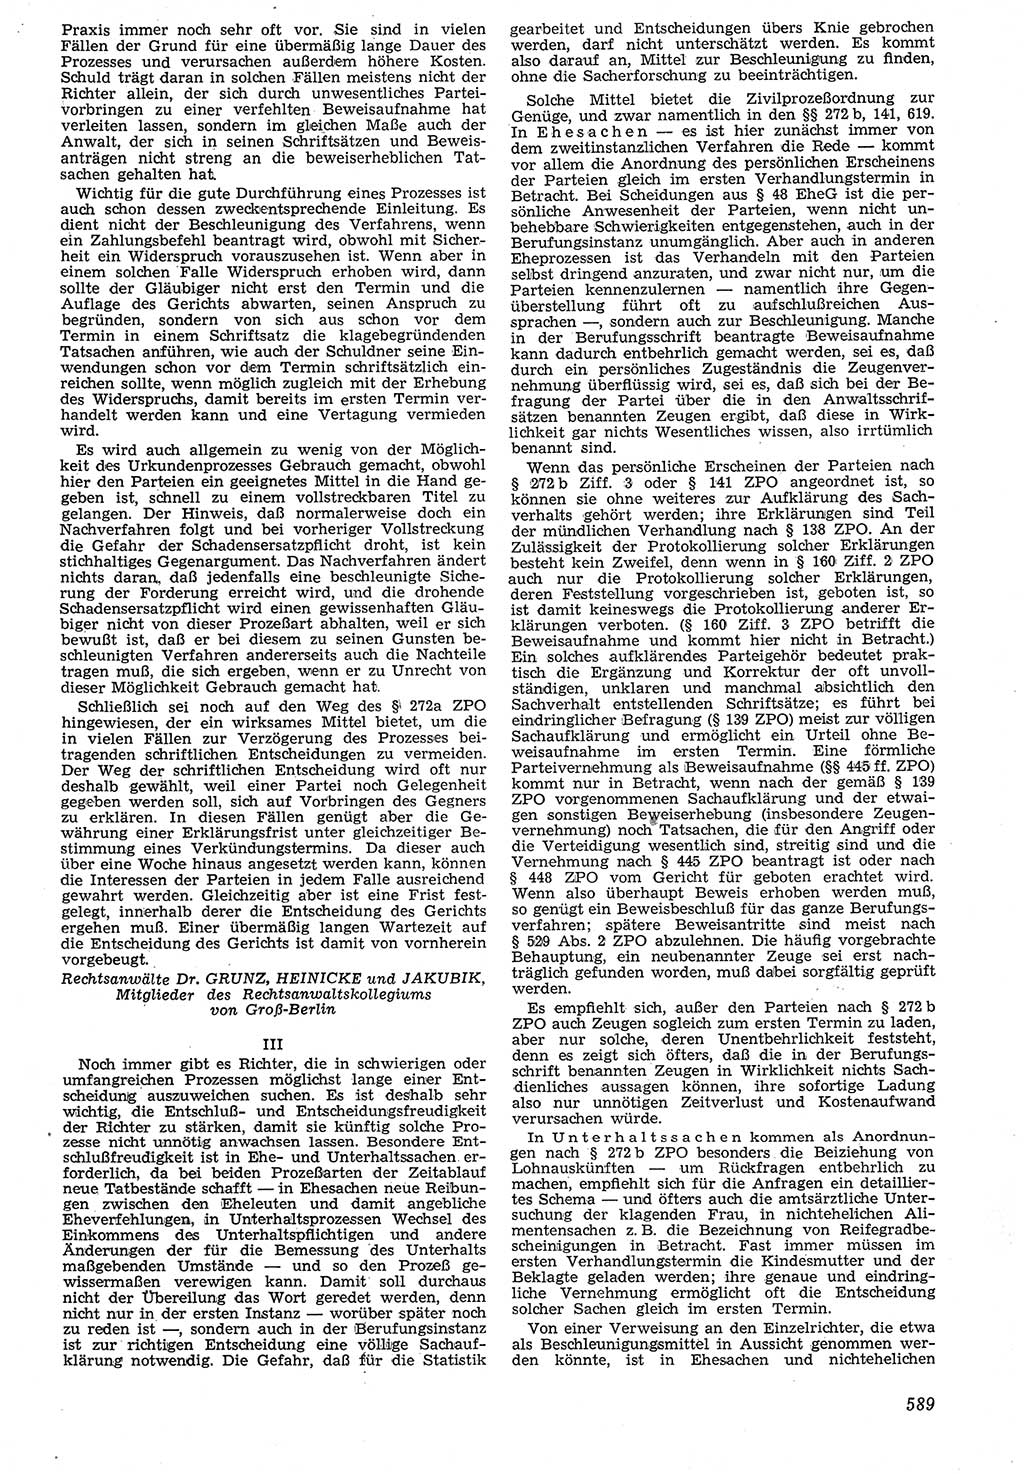 Neue Justiz (NJ), Zeitschrift für Recht und Rechtswissenschaft [Deutsche Demokratische Republik (DDR)], 7. Jahrgang 1953, Seite 589 (NJ DDR 1953, S. 589)